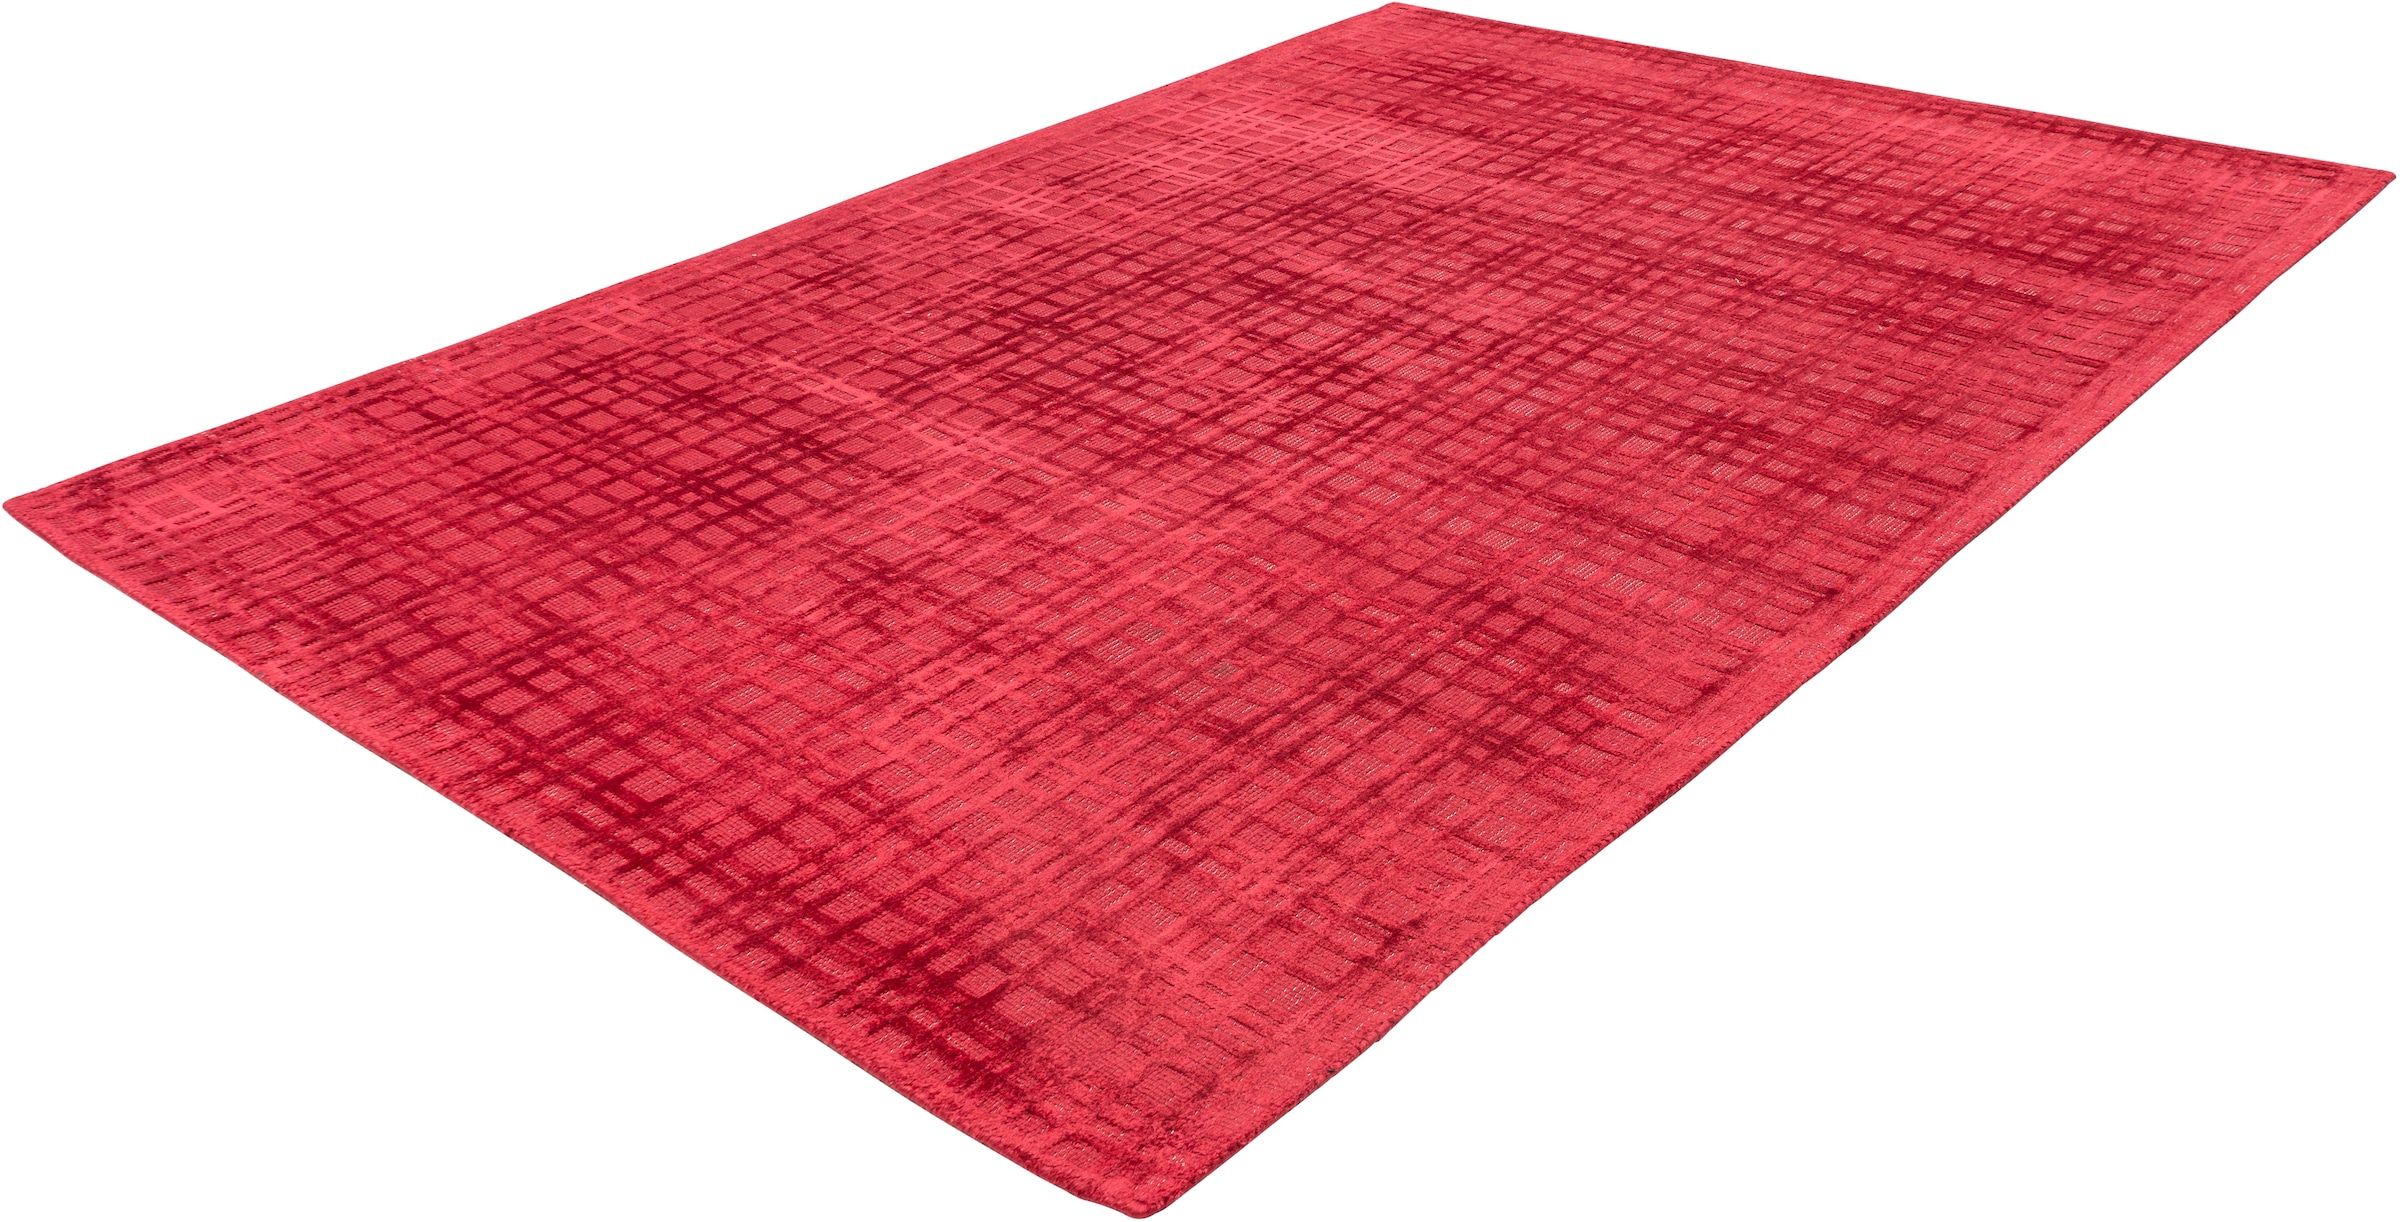 Padiro Teppich »Karma 125«, rechteckig, Handgewebter Teppich mit 3D-Design, weiche Haptik, pflegeleicht